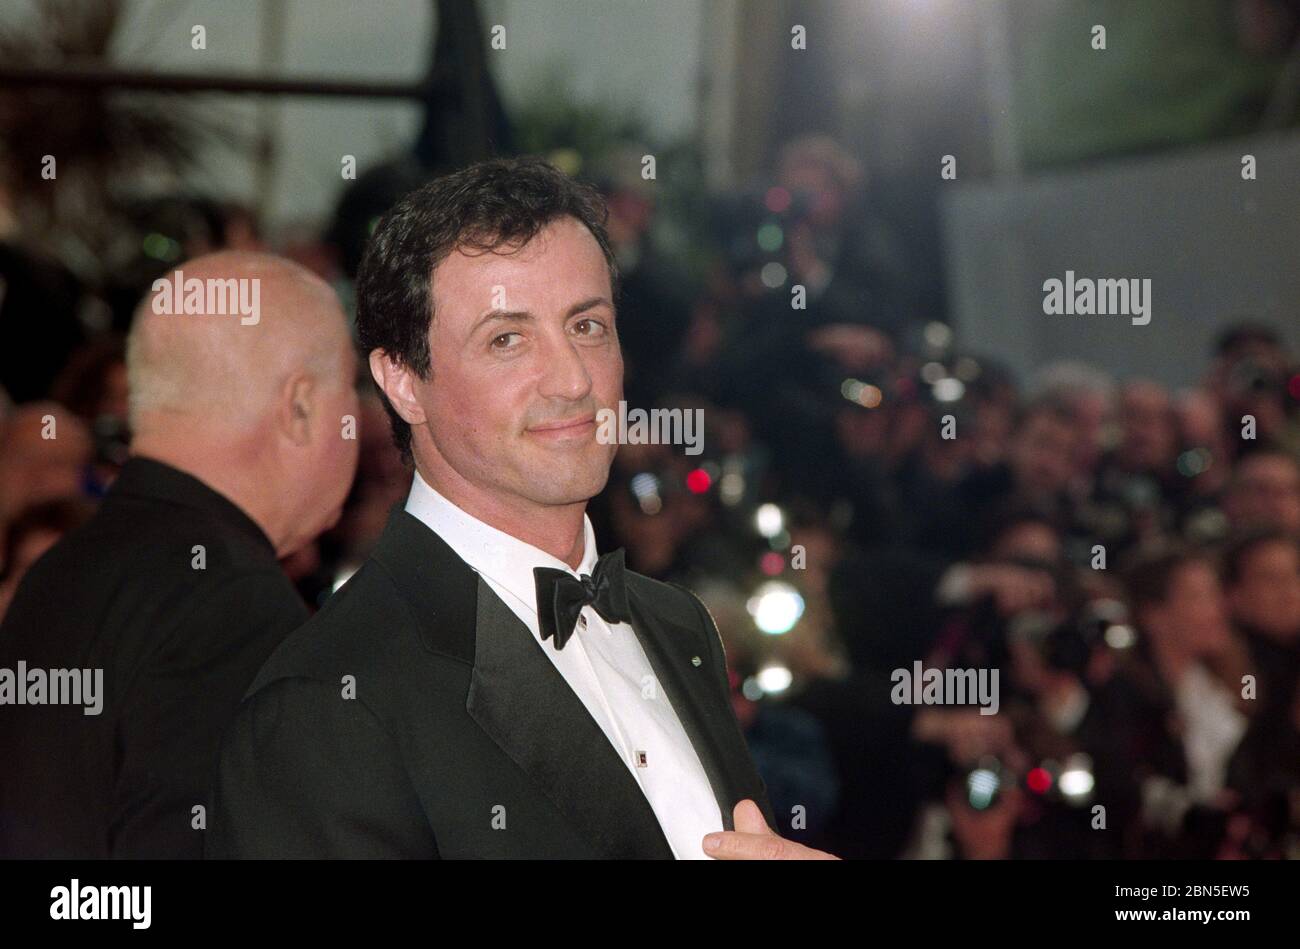 CANNES, FRANCIA. Maggio 1997: Sylvester Stallone al 50° Festival del Film di Cannes. Foto file © Paul Smith/Featureflash Foto Stock